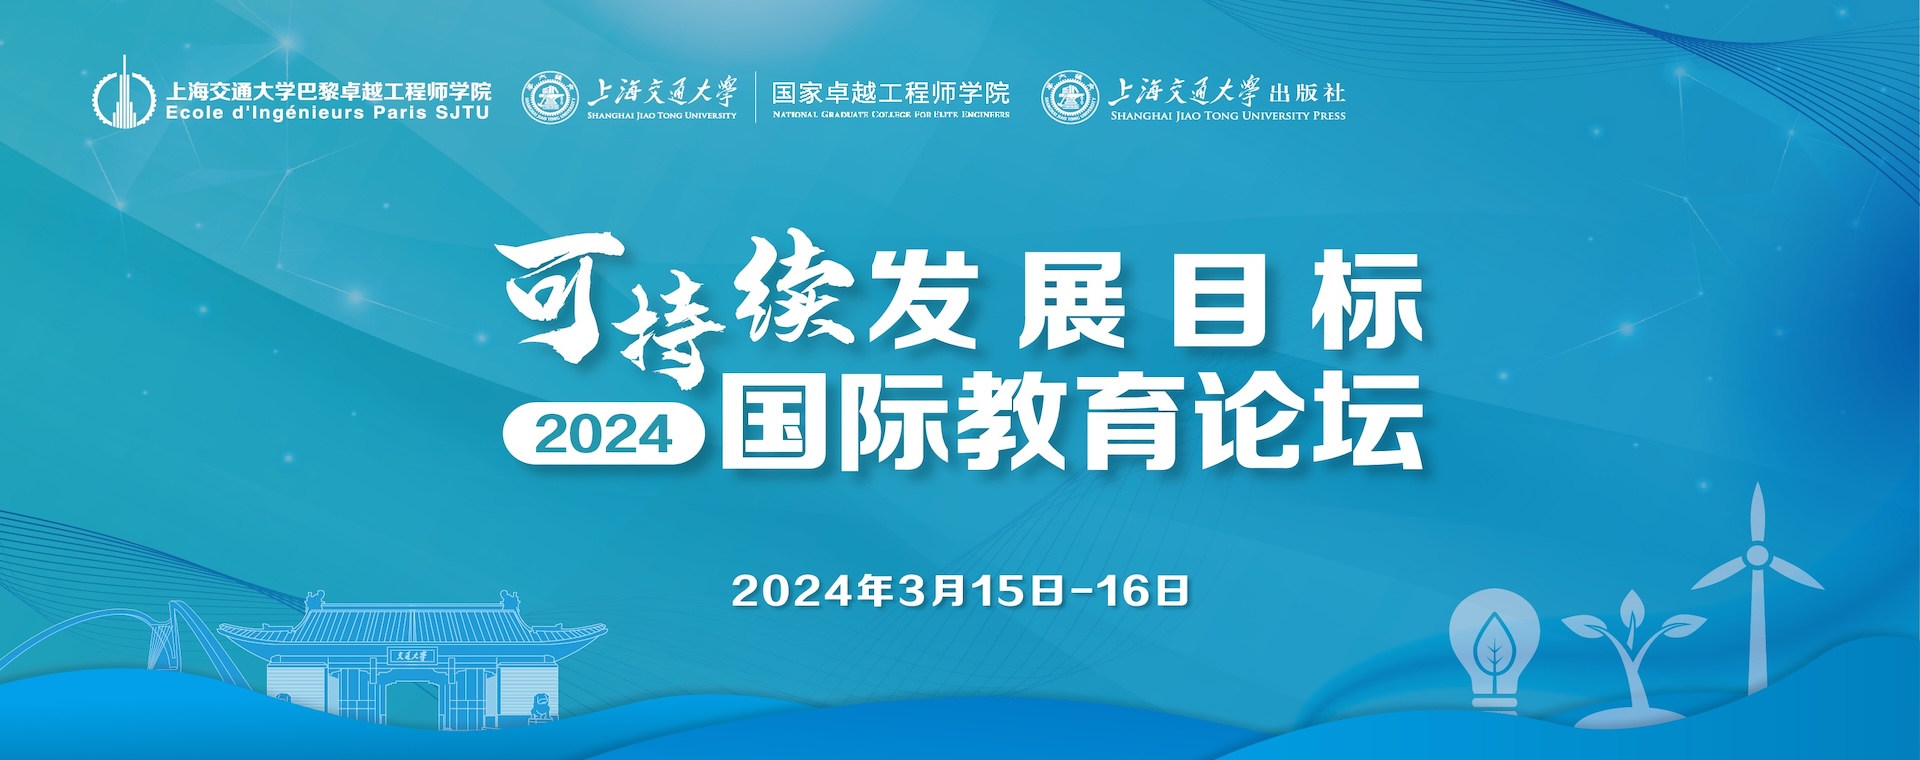 上海交通大学第一届可持续发展目标国际教育论坛会议议程